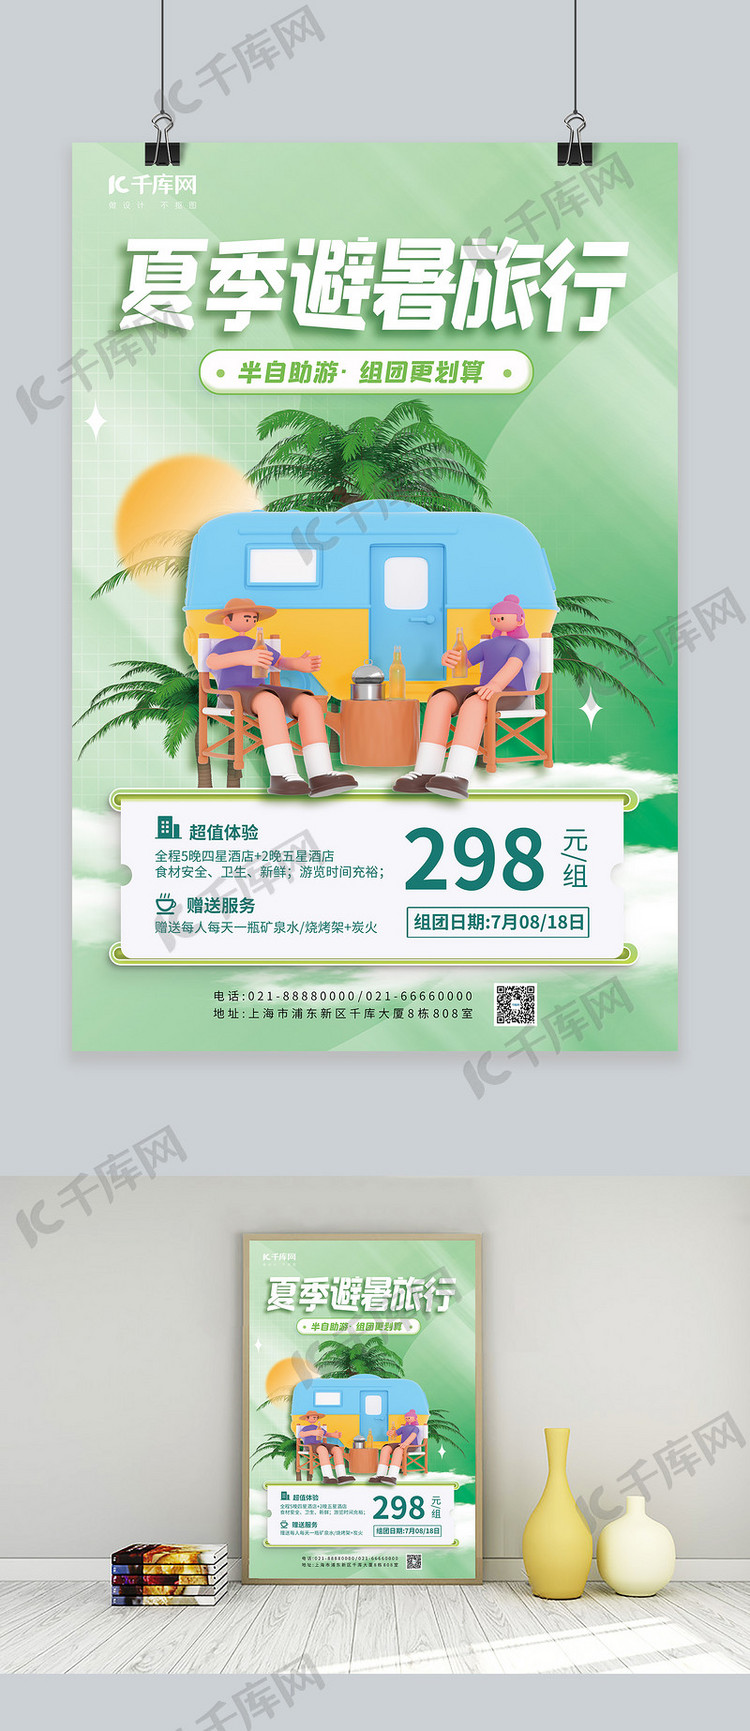 夏季避暑旅行3D房车露营绿色简约海报